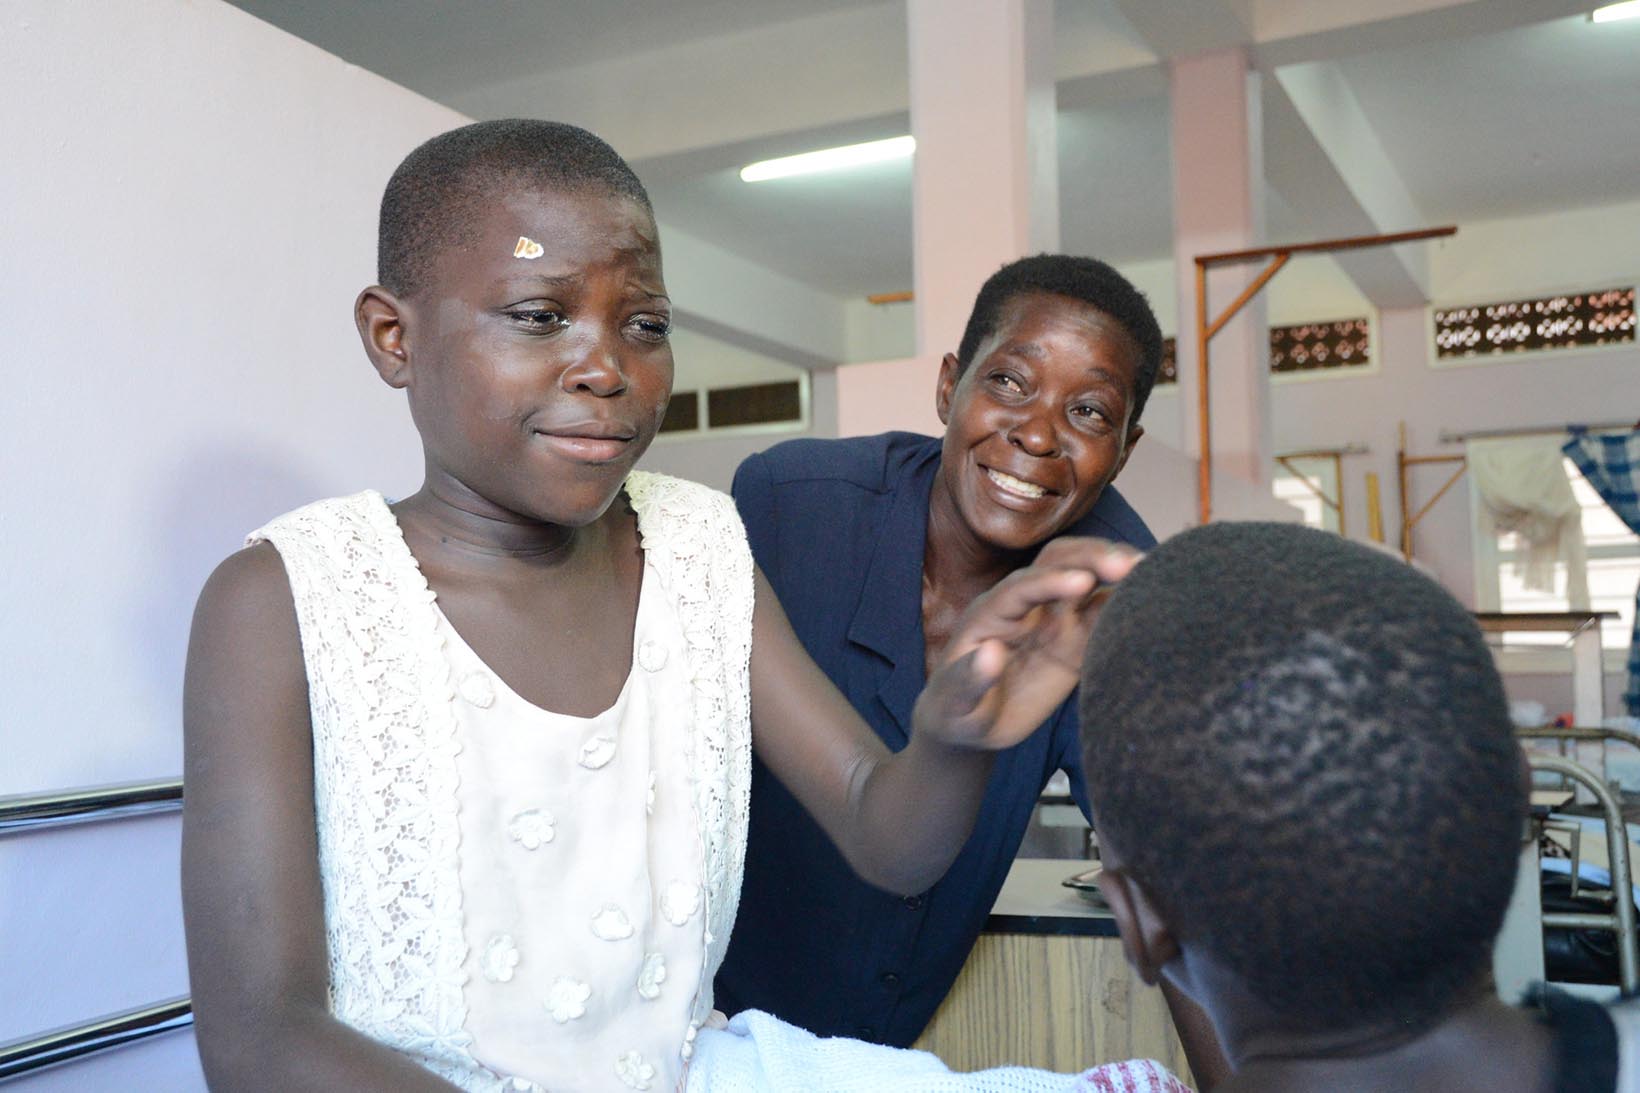 Ein Mädchen aus Uganda, das vor kurzem eine Graue-Star-Operation hatte, blickt gerührt ein anderes Mädchen an. Im Hintergrund lächelt die Mutter des Mädchens, das vor kurzem operiert worden ist.